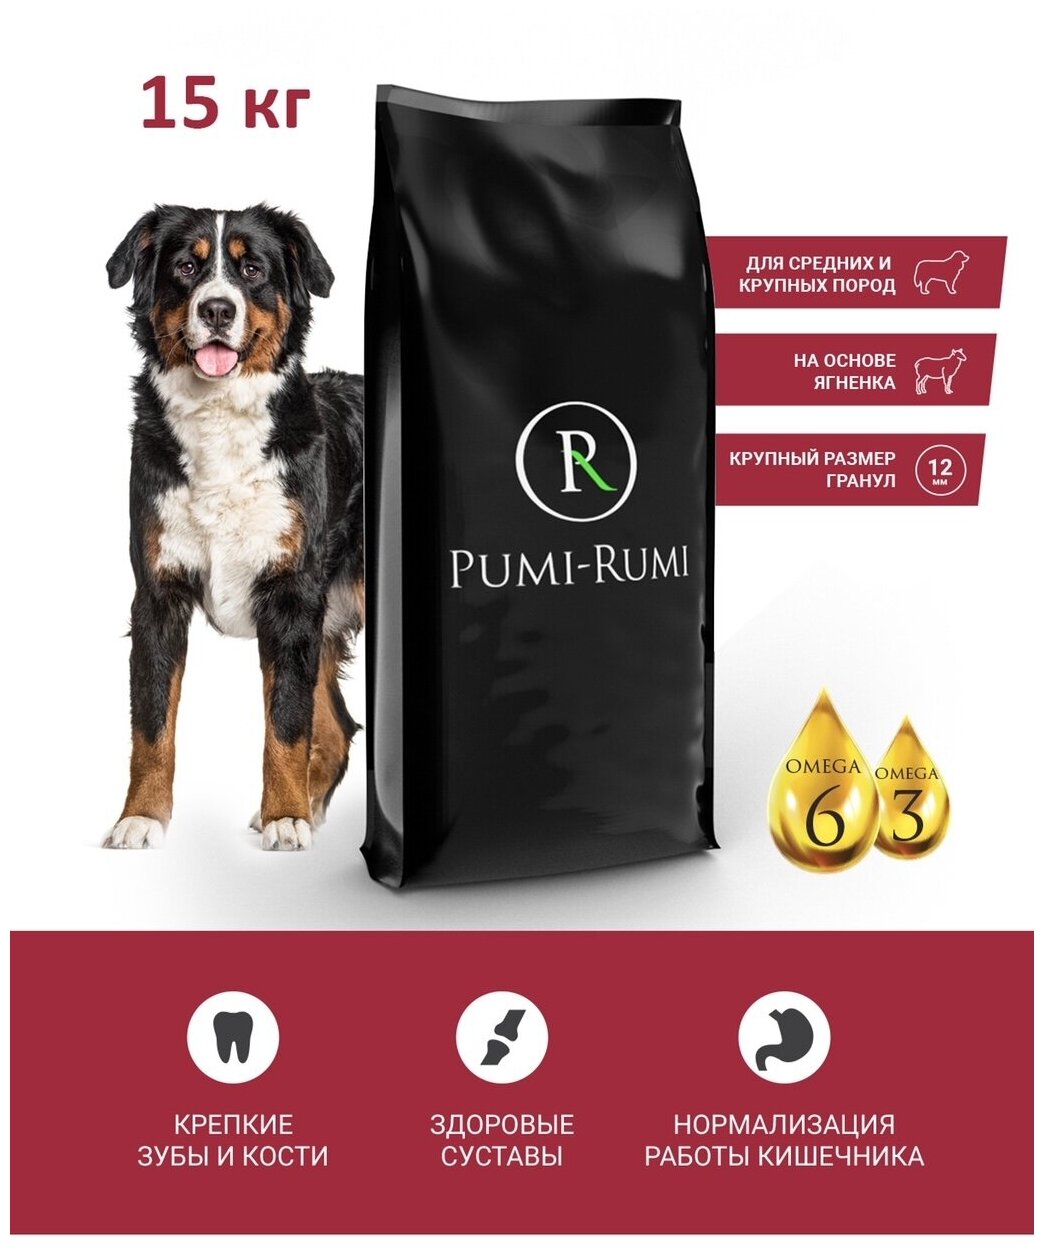 Сухой премиум корм для собак средних и крупных пород PUMI-RUMI OPTIMAL из ягненка с рисом, гранула 12 мм, 15 кг